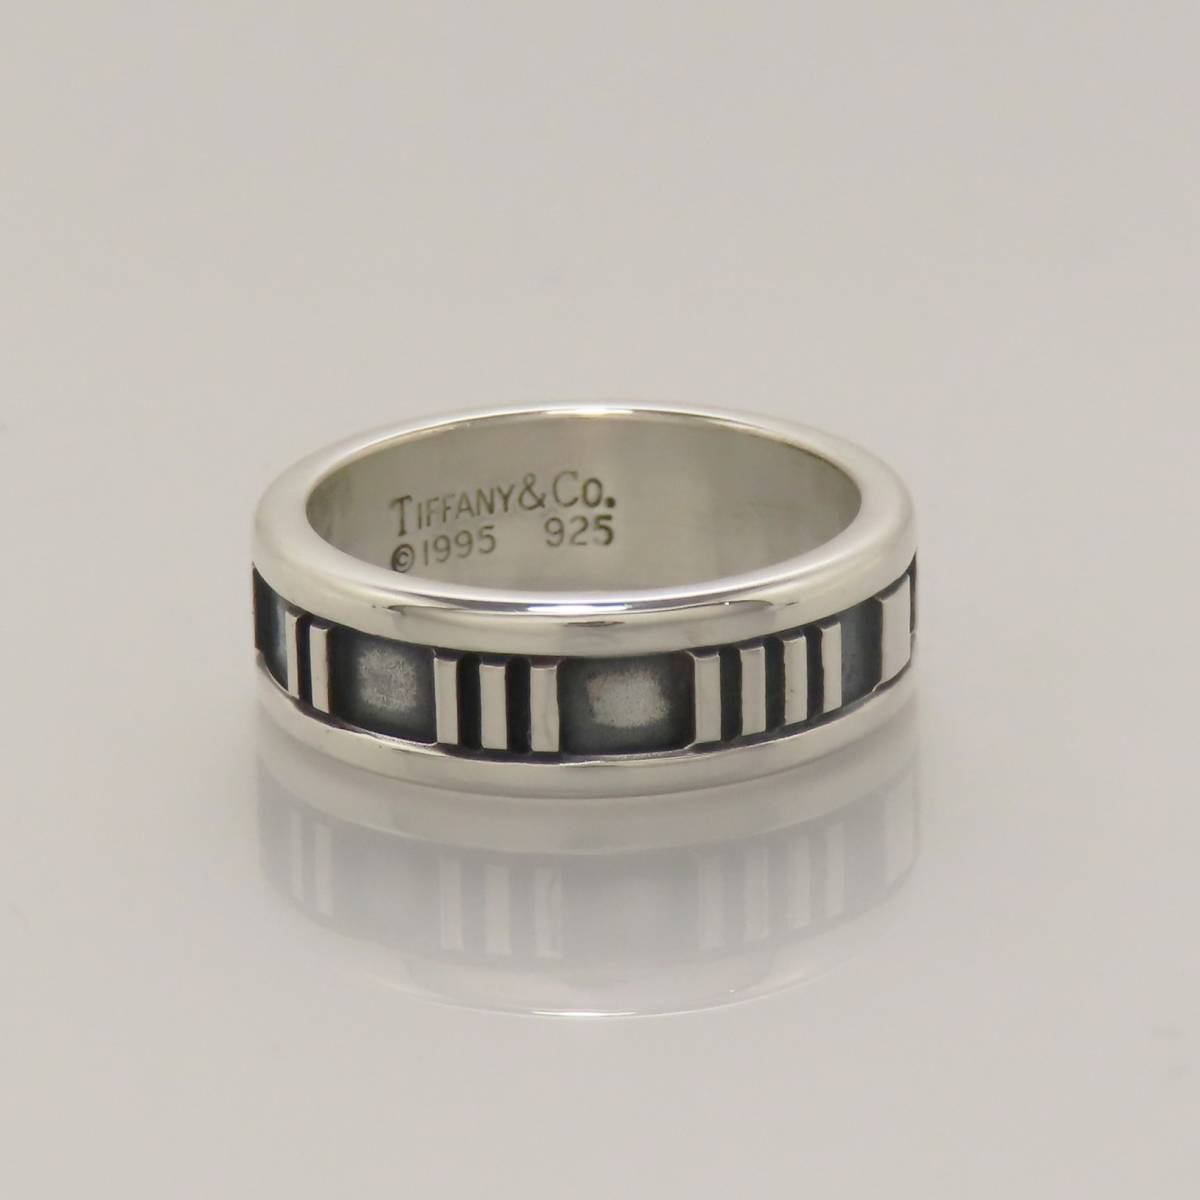 新品同様 美品 TIFFANY&Co. ティファニー アトラス ナローリング 指輪 シルバー925 12号 5.7g